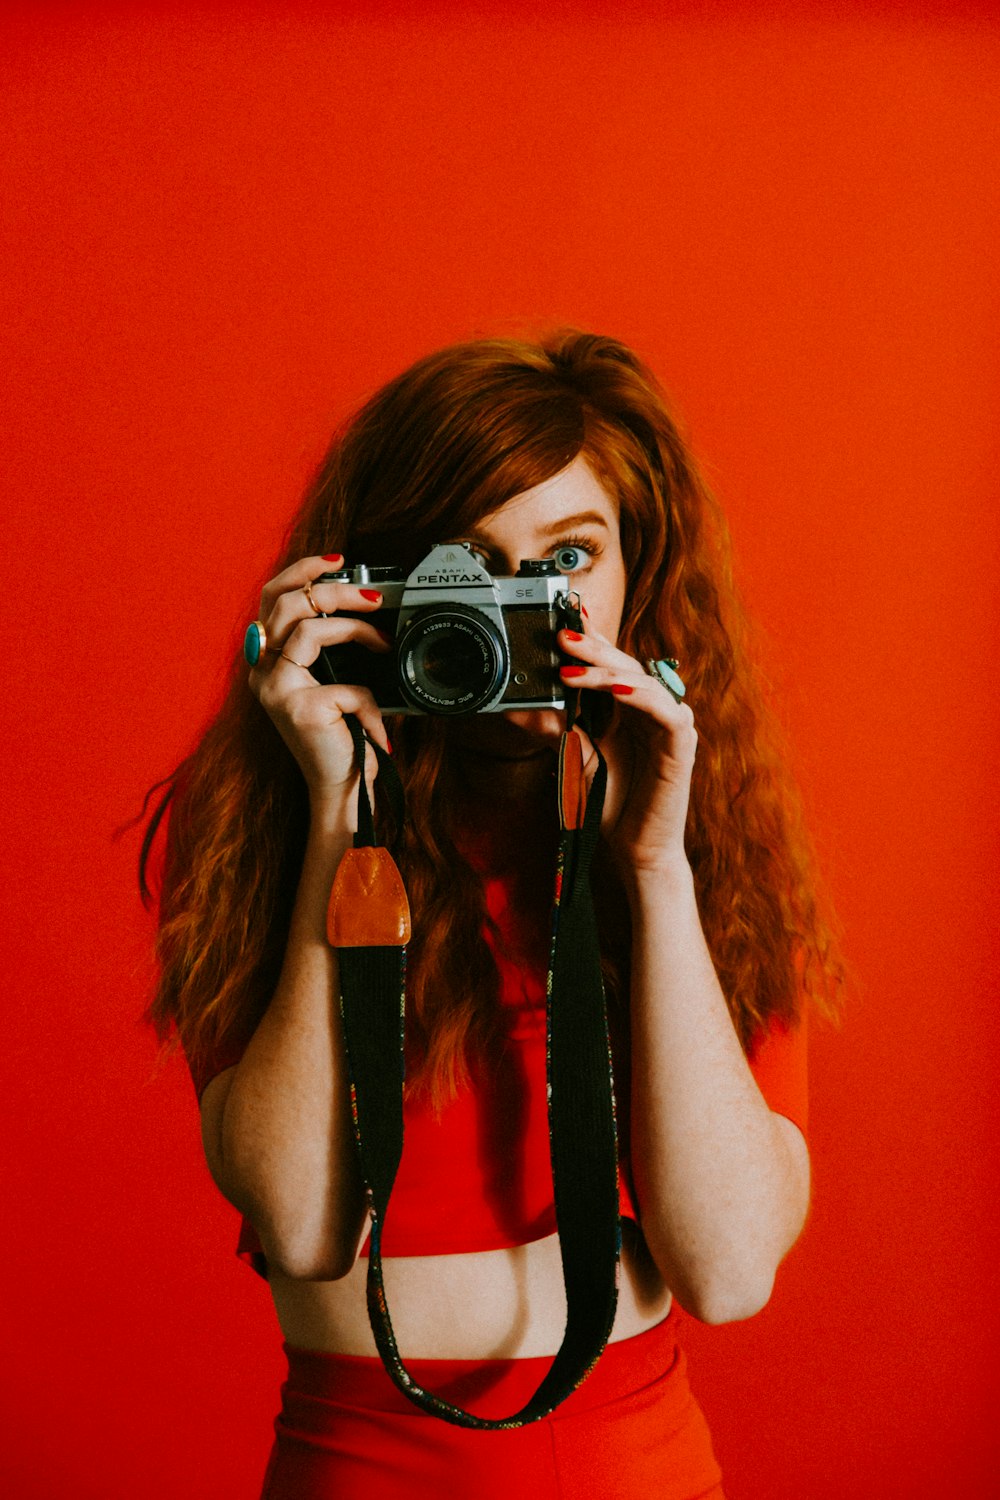 femme en haut et bas rouge tenant un appareil photo Pentax